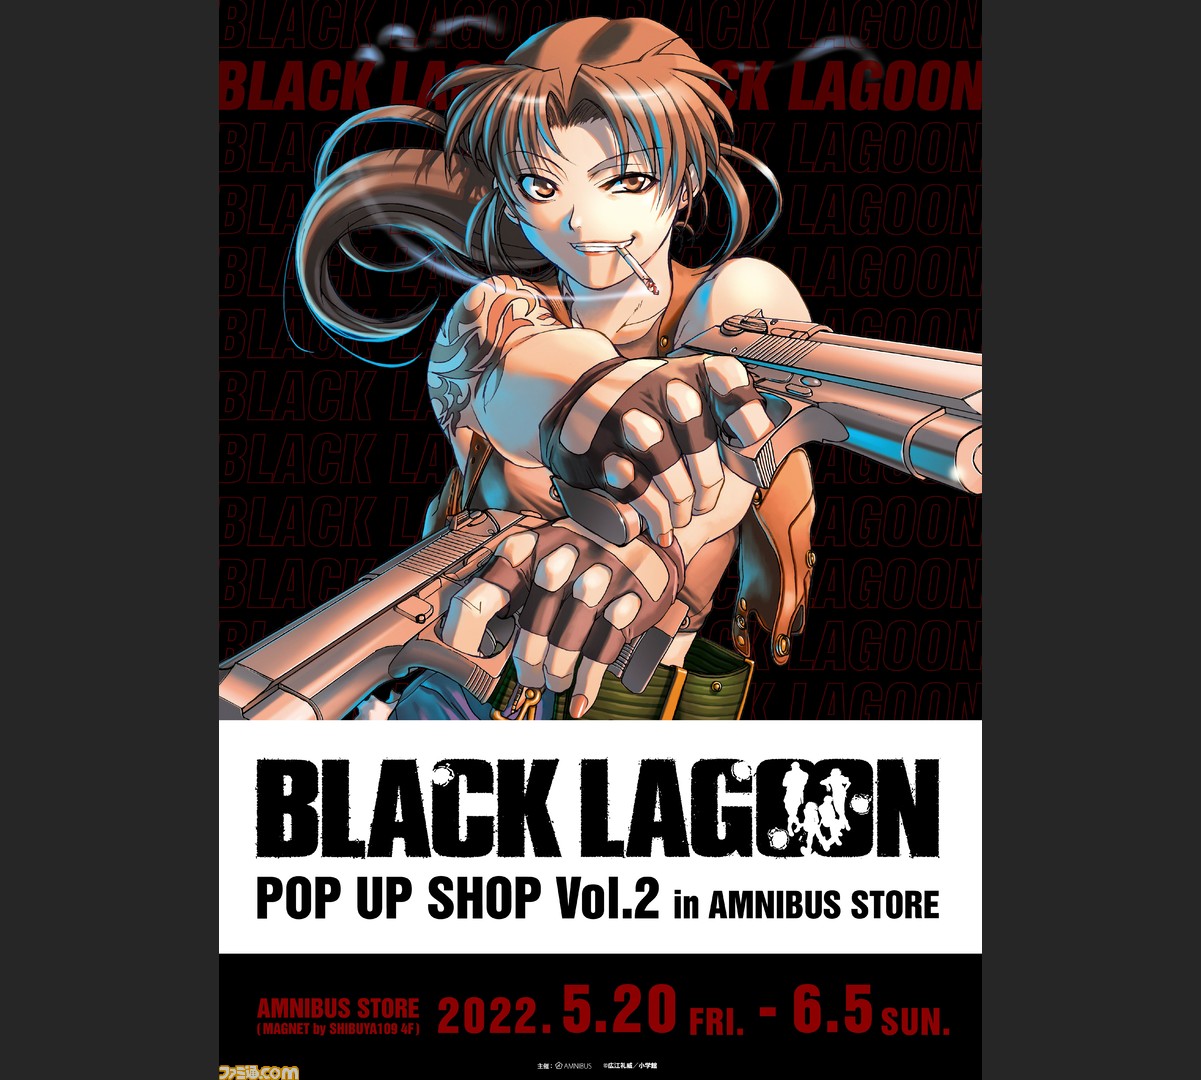 ブラック・ラグーン』限定ショップが渋谷・AMNIBUS STOREで5月20日より